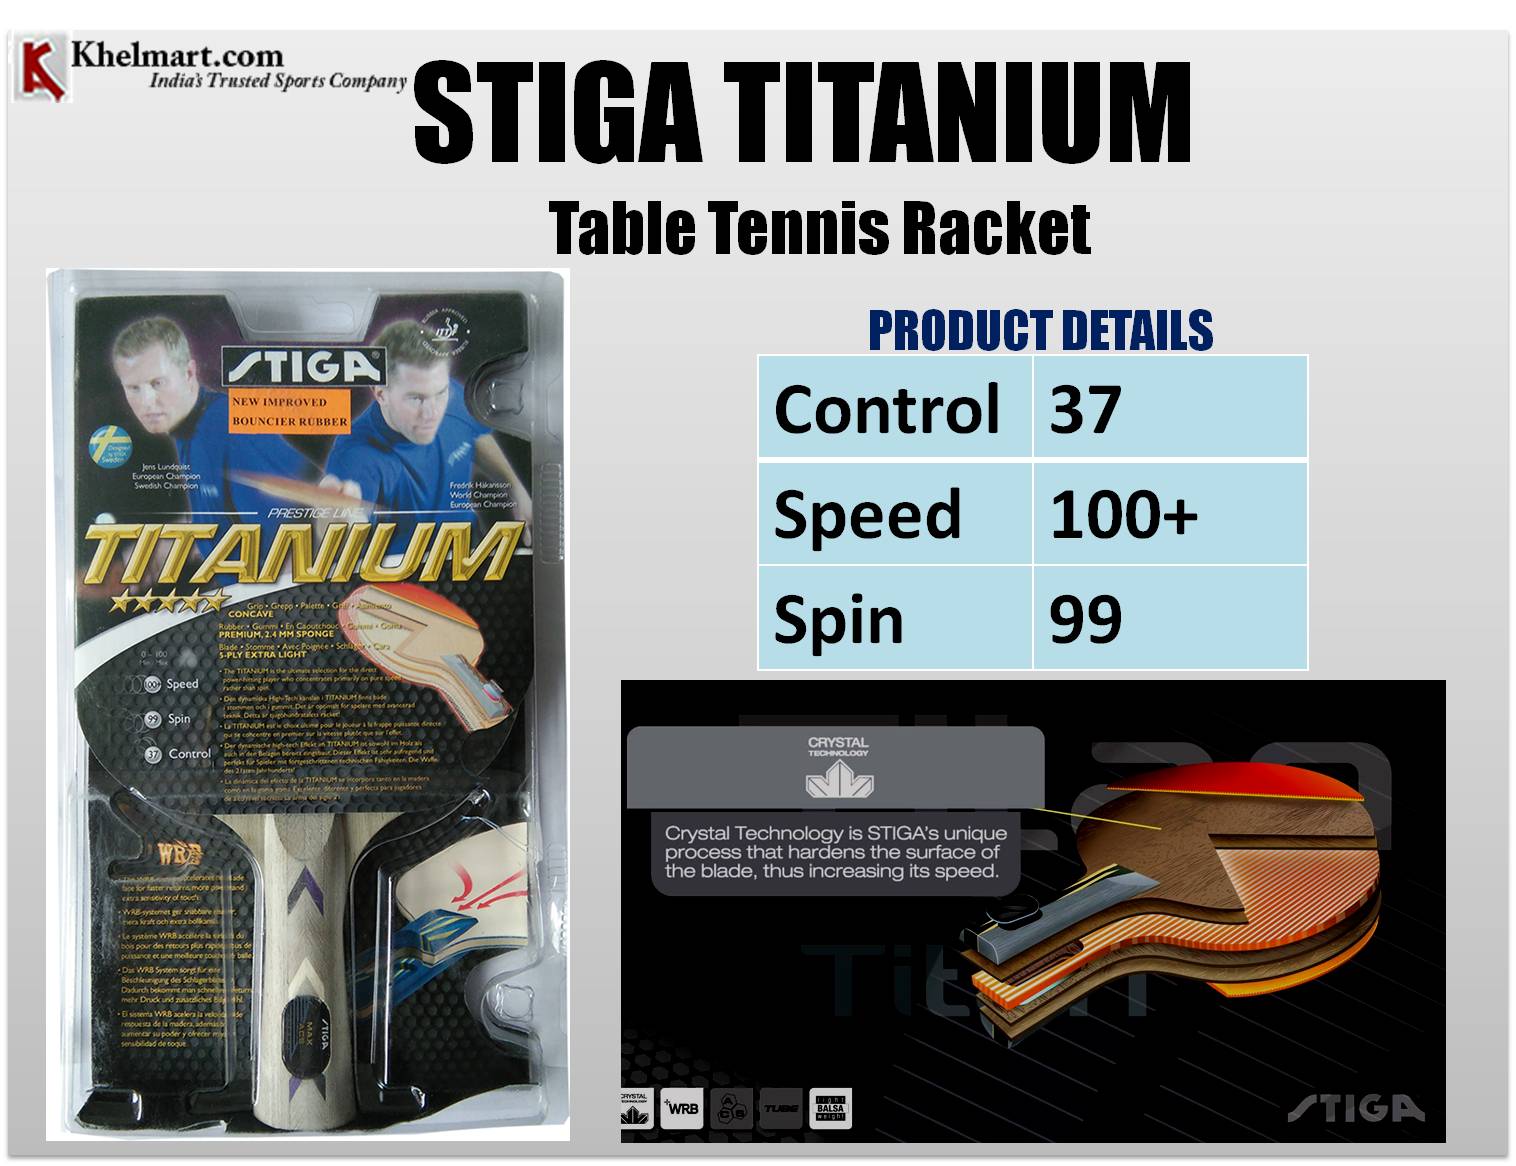 STIGA_TITANIUM_Table_Tennis_Racket.jpg